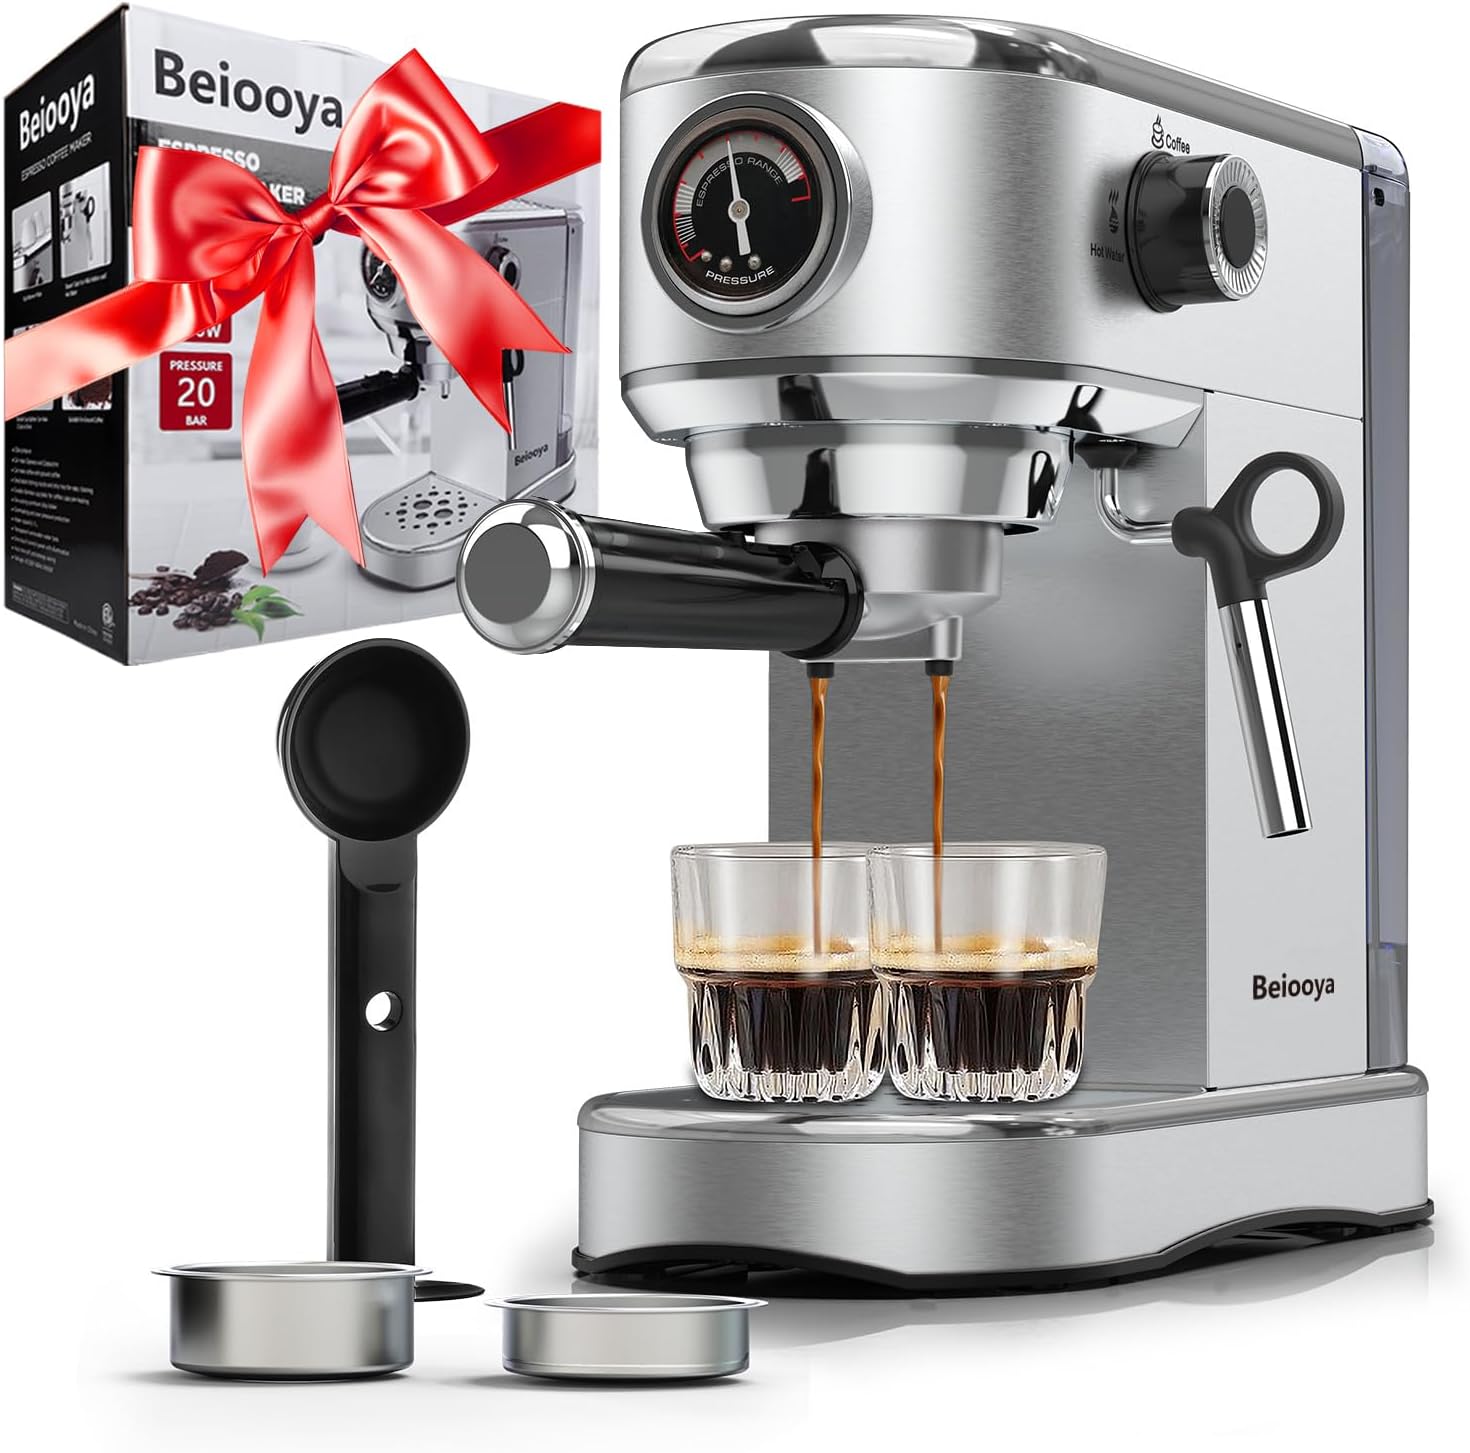 Beiooya Espresso Machine Review